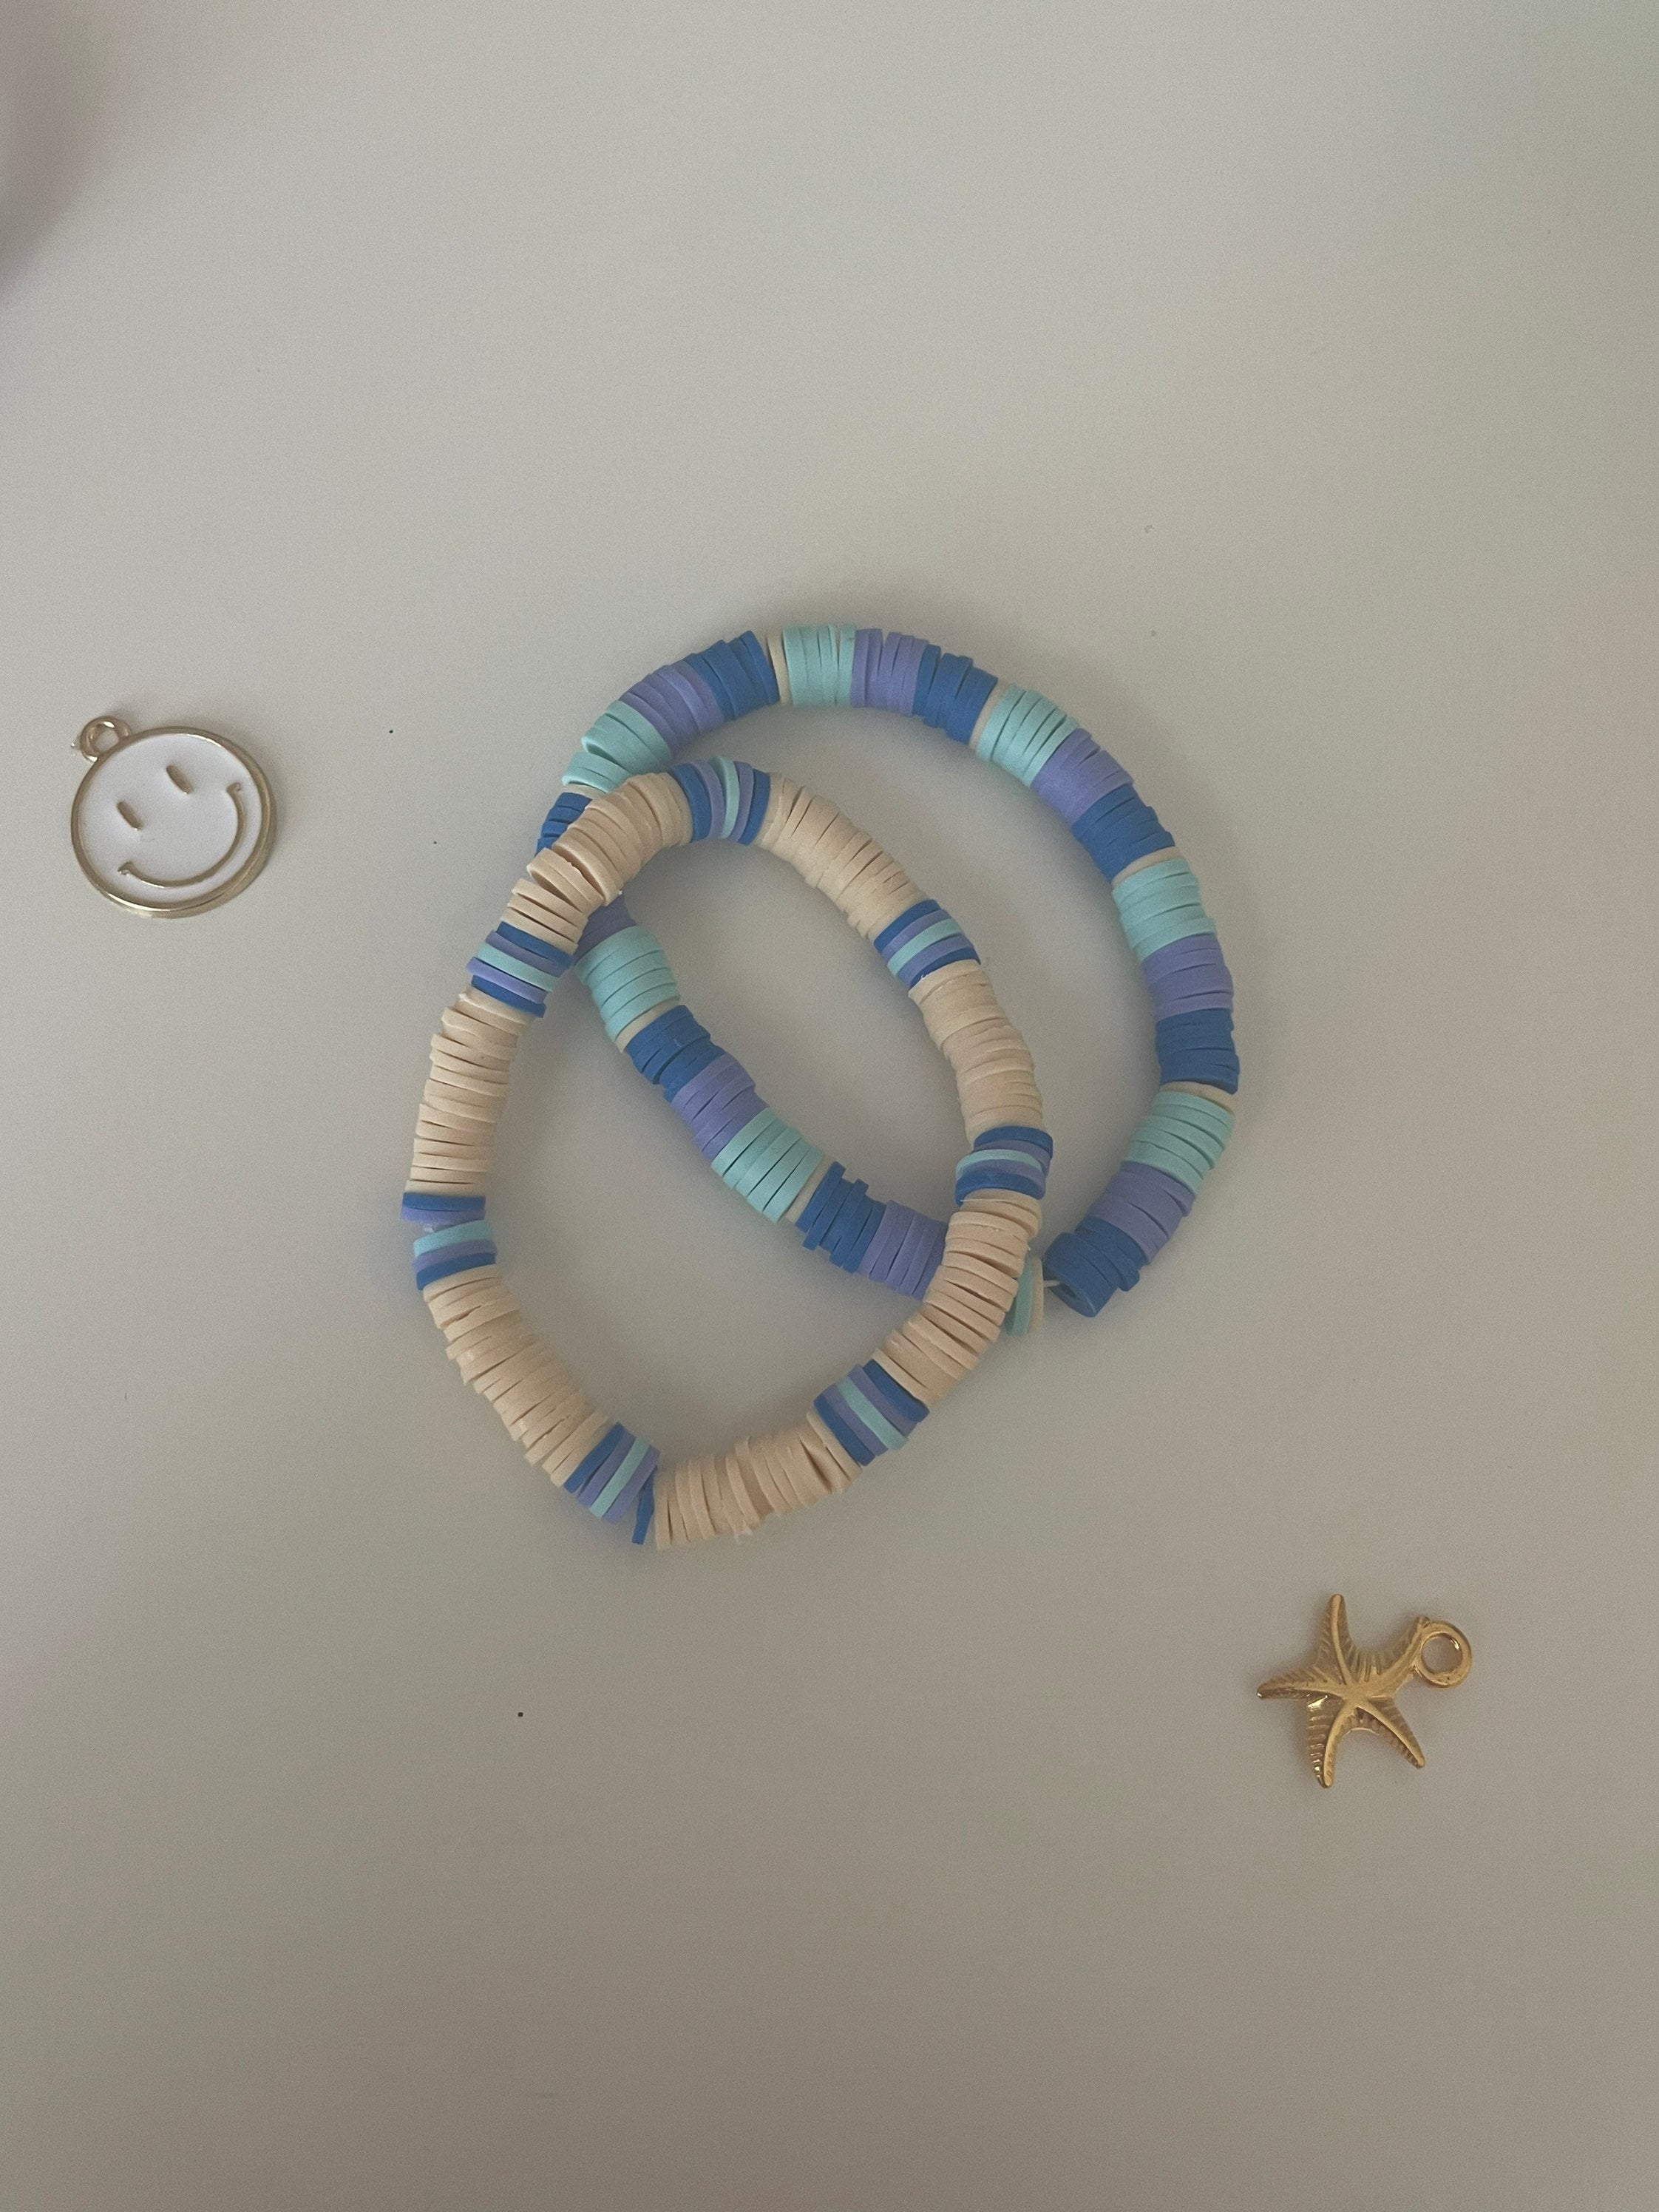 Handmade blue Haven Clay Beaded Bracelet -  UK  Pulseras bonitas,  Pulseras de joyería, Pulsera de mano